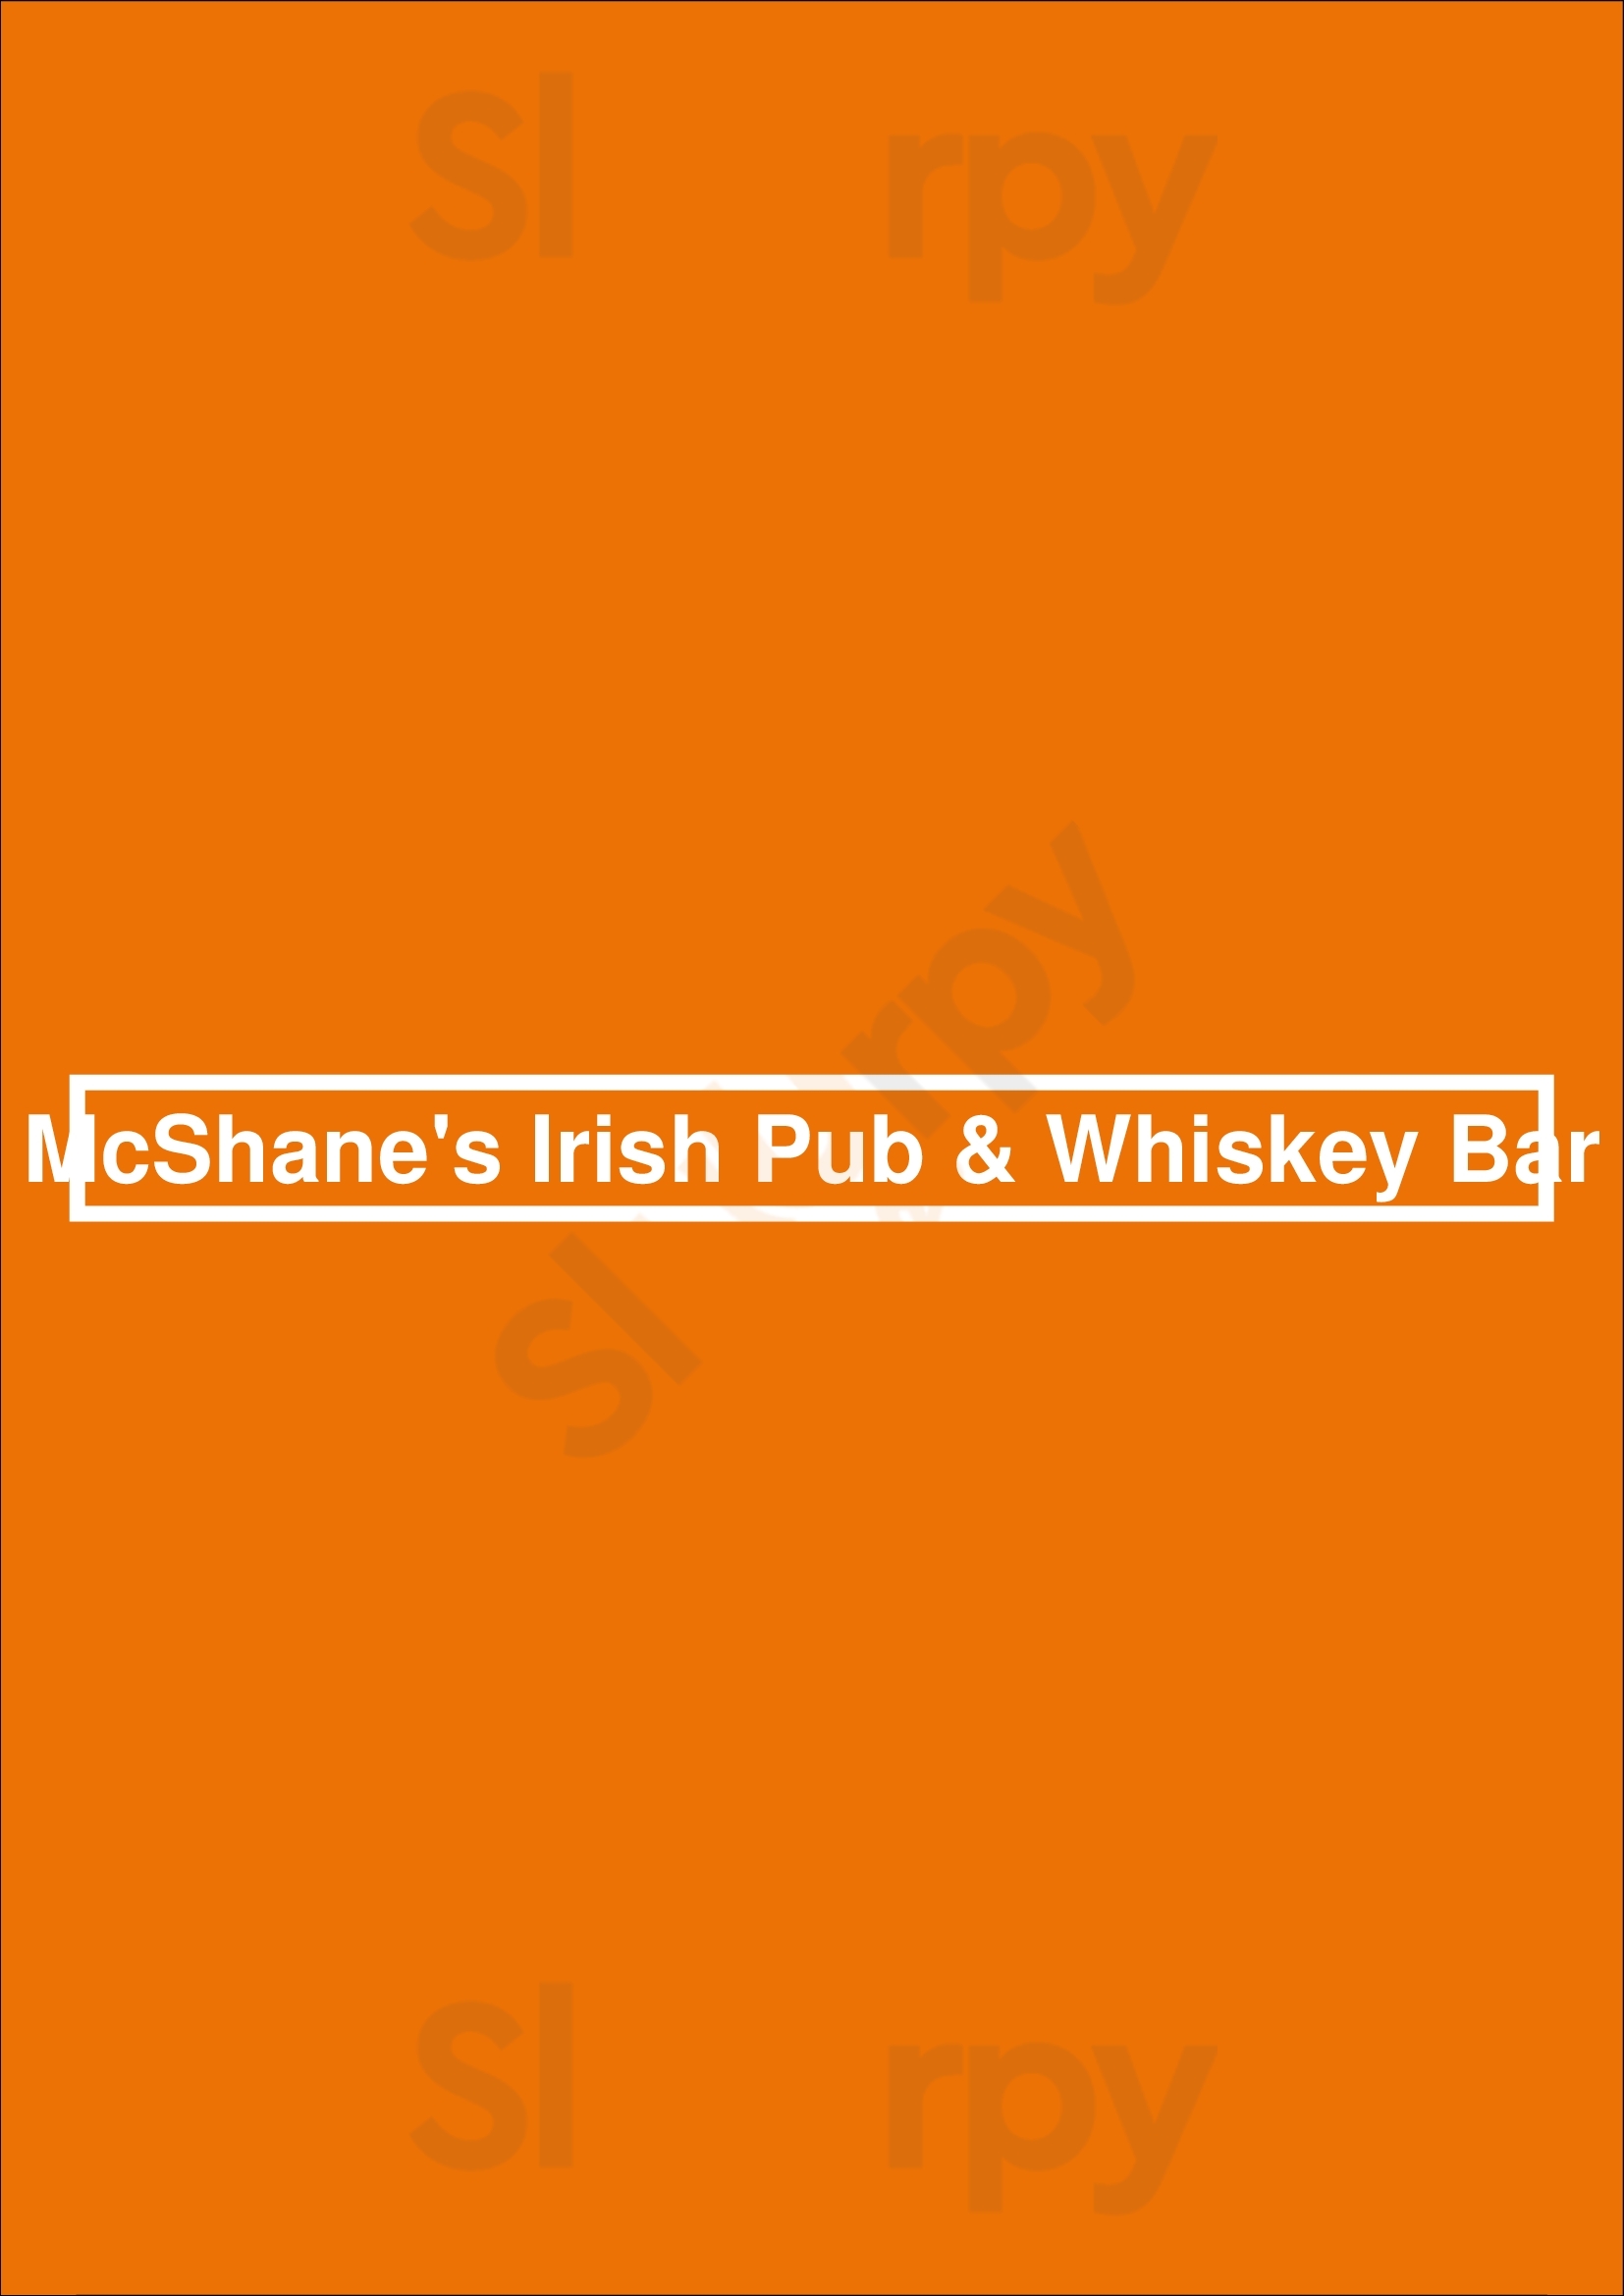 Mcshane's Irish Pub & Whiskey Bar Detroit Menu - 1